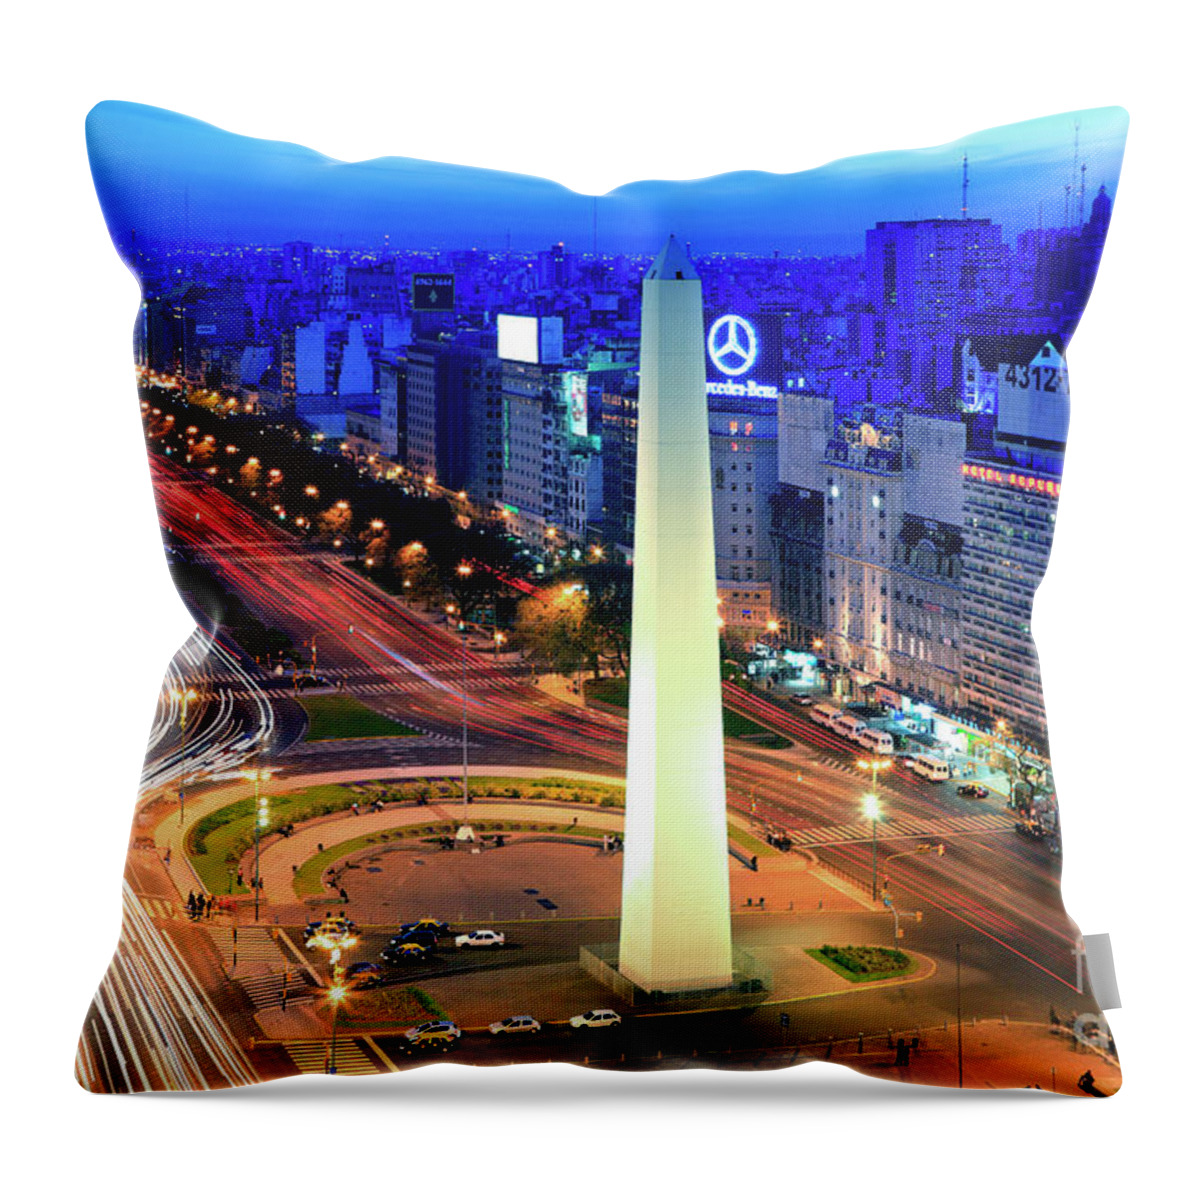 Buenos Aires Throw Pillow featuring the photograph 9 de Julio Avenue by Bernardo Galmarini